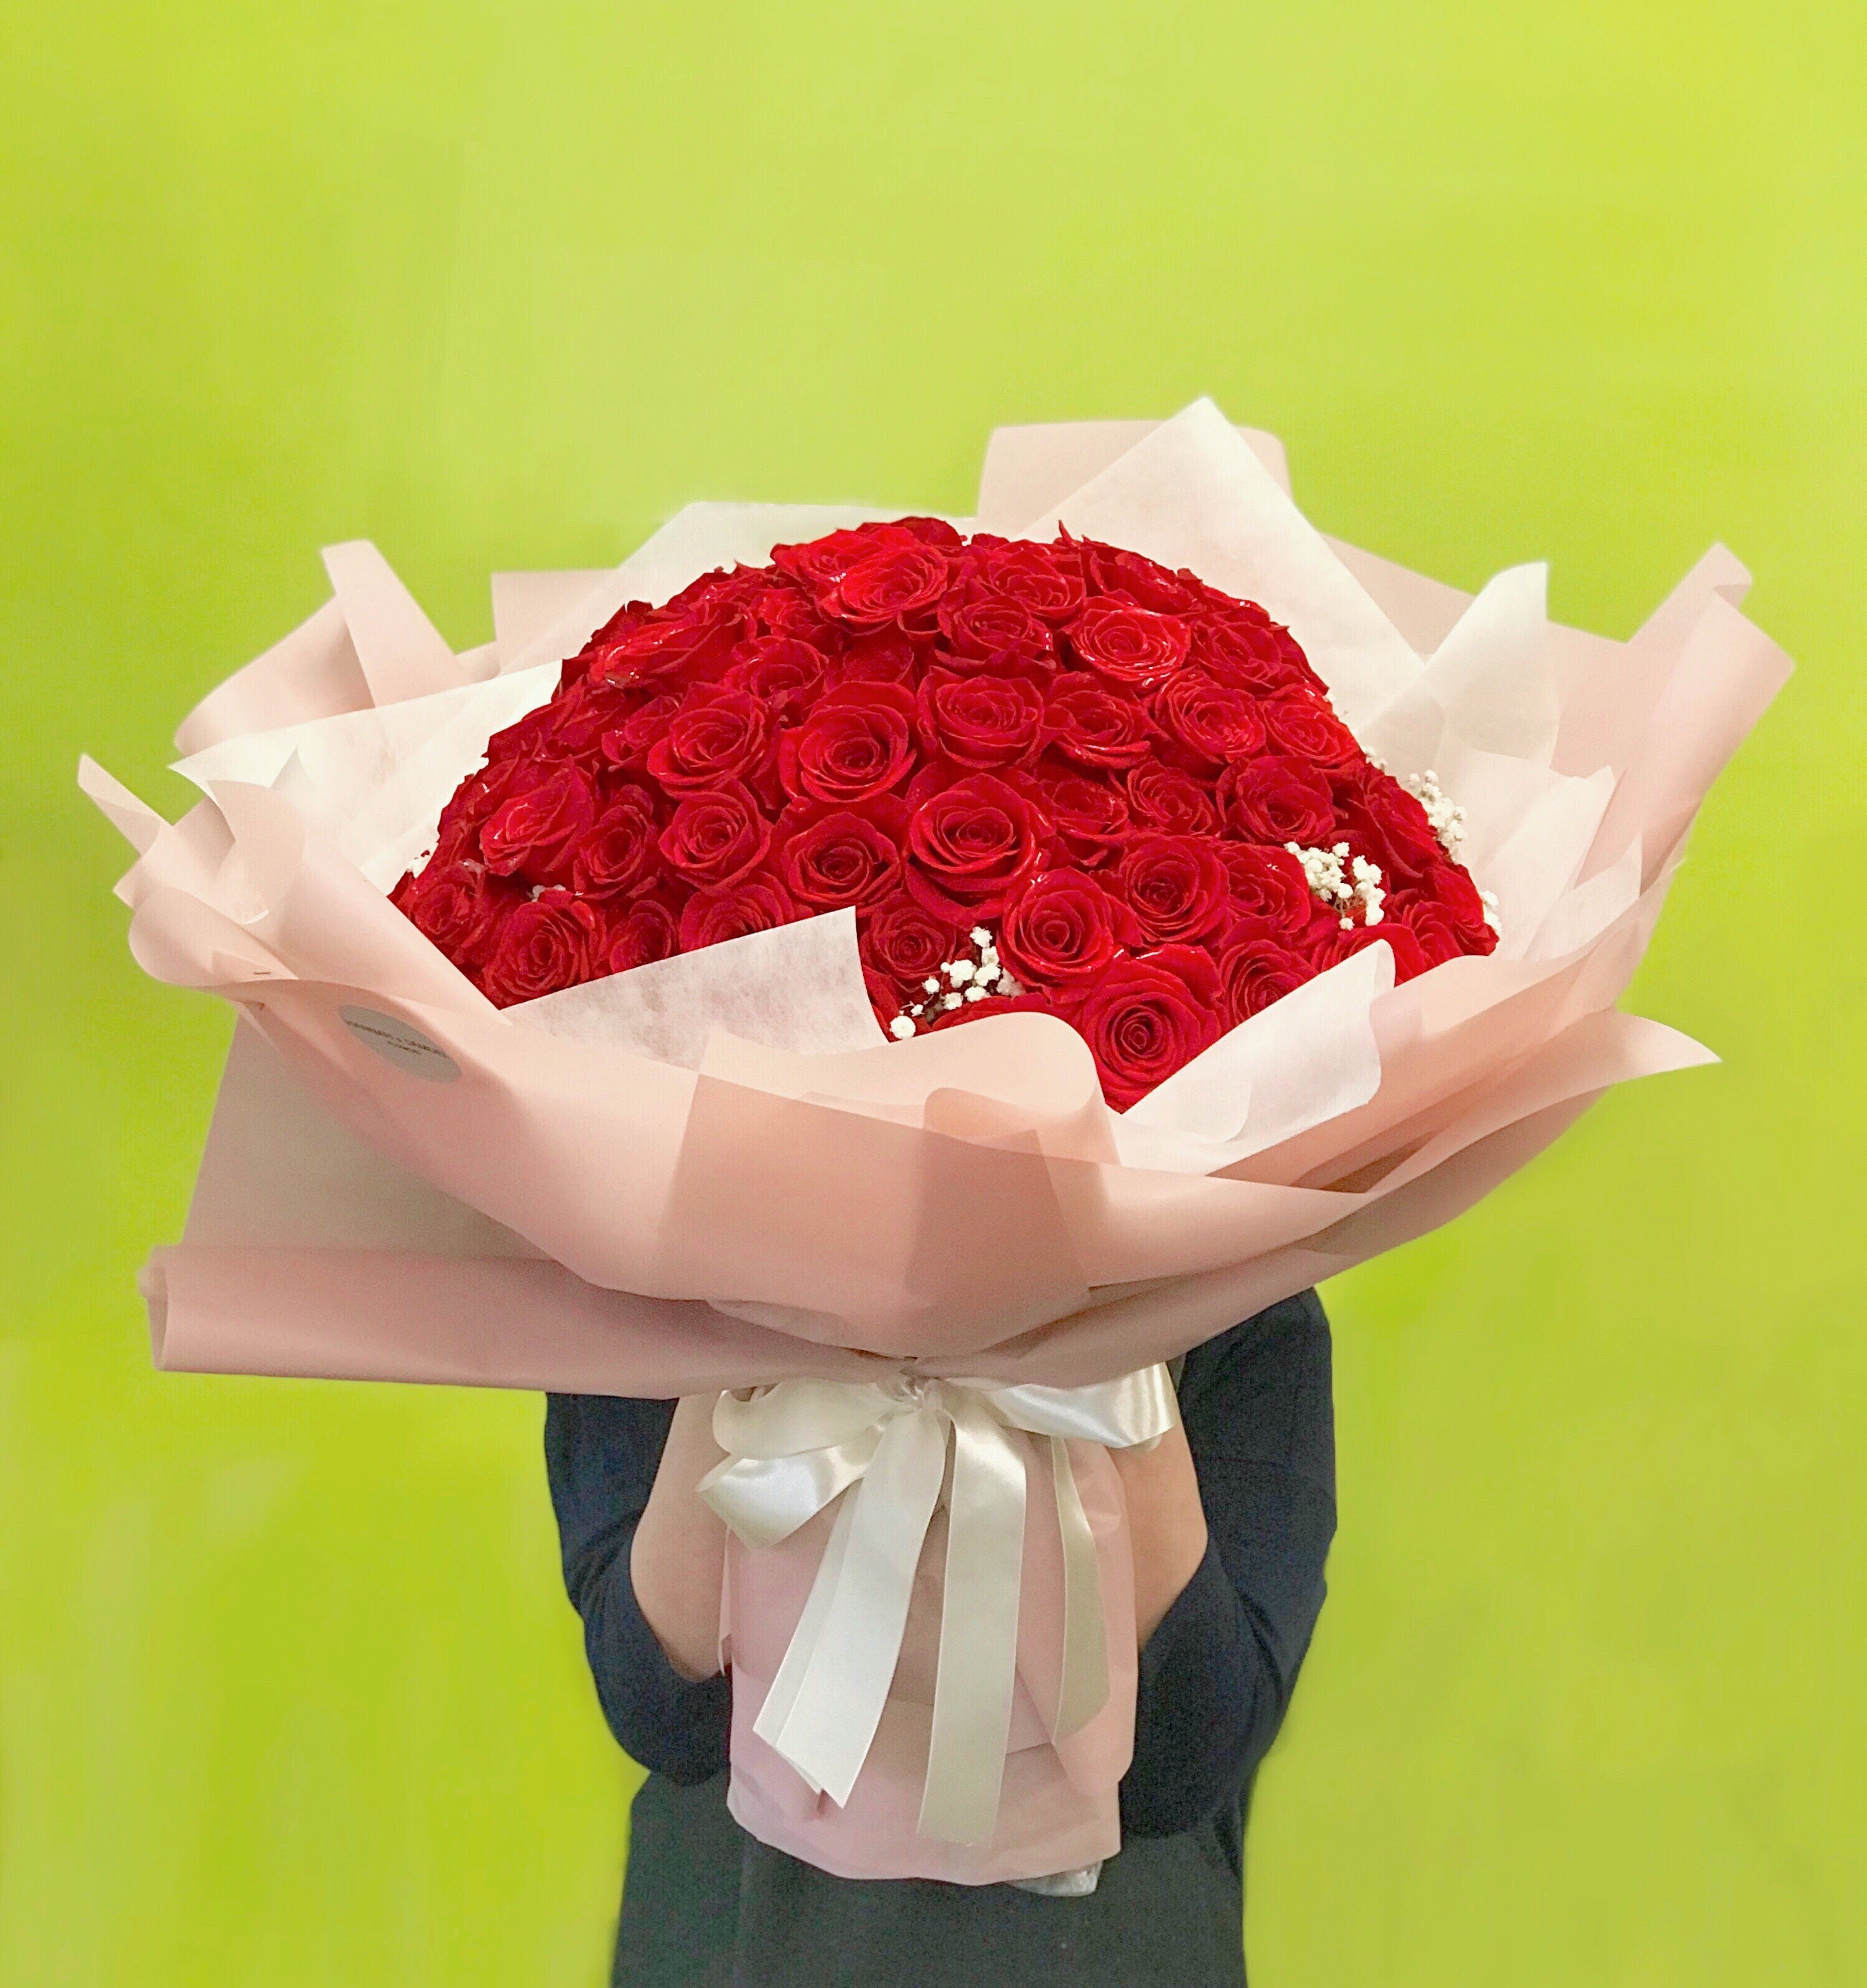 HC-116 Proposal Roses Bouquet